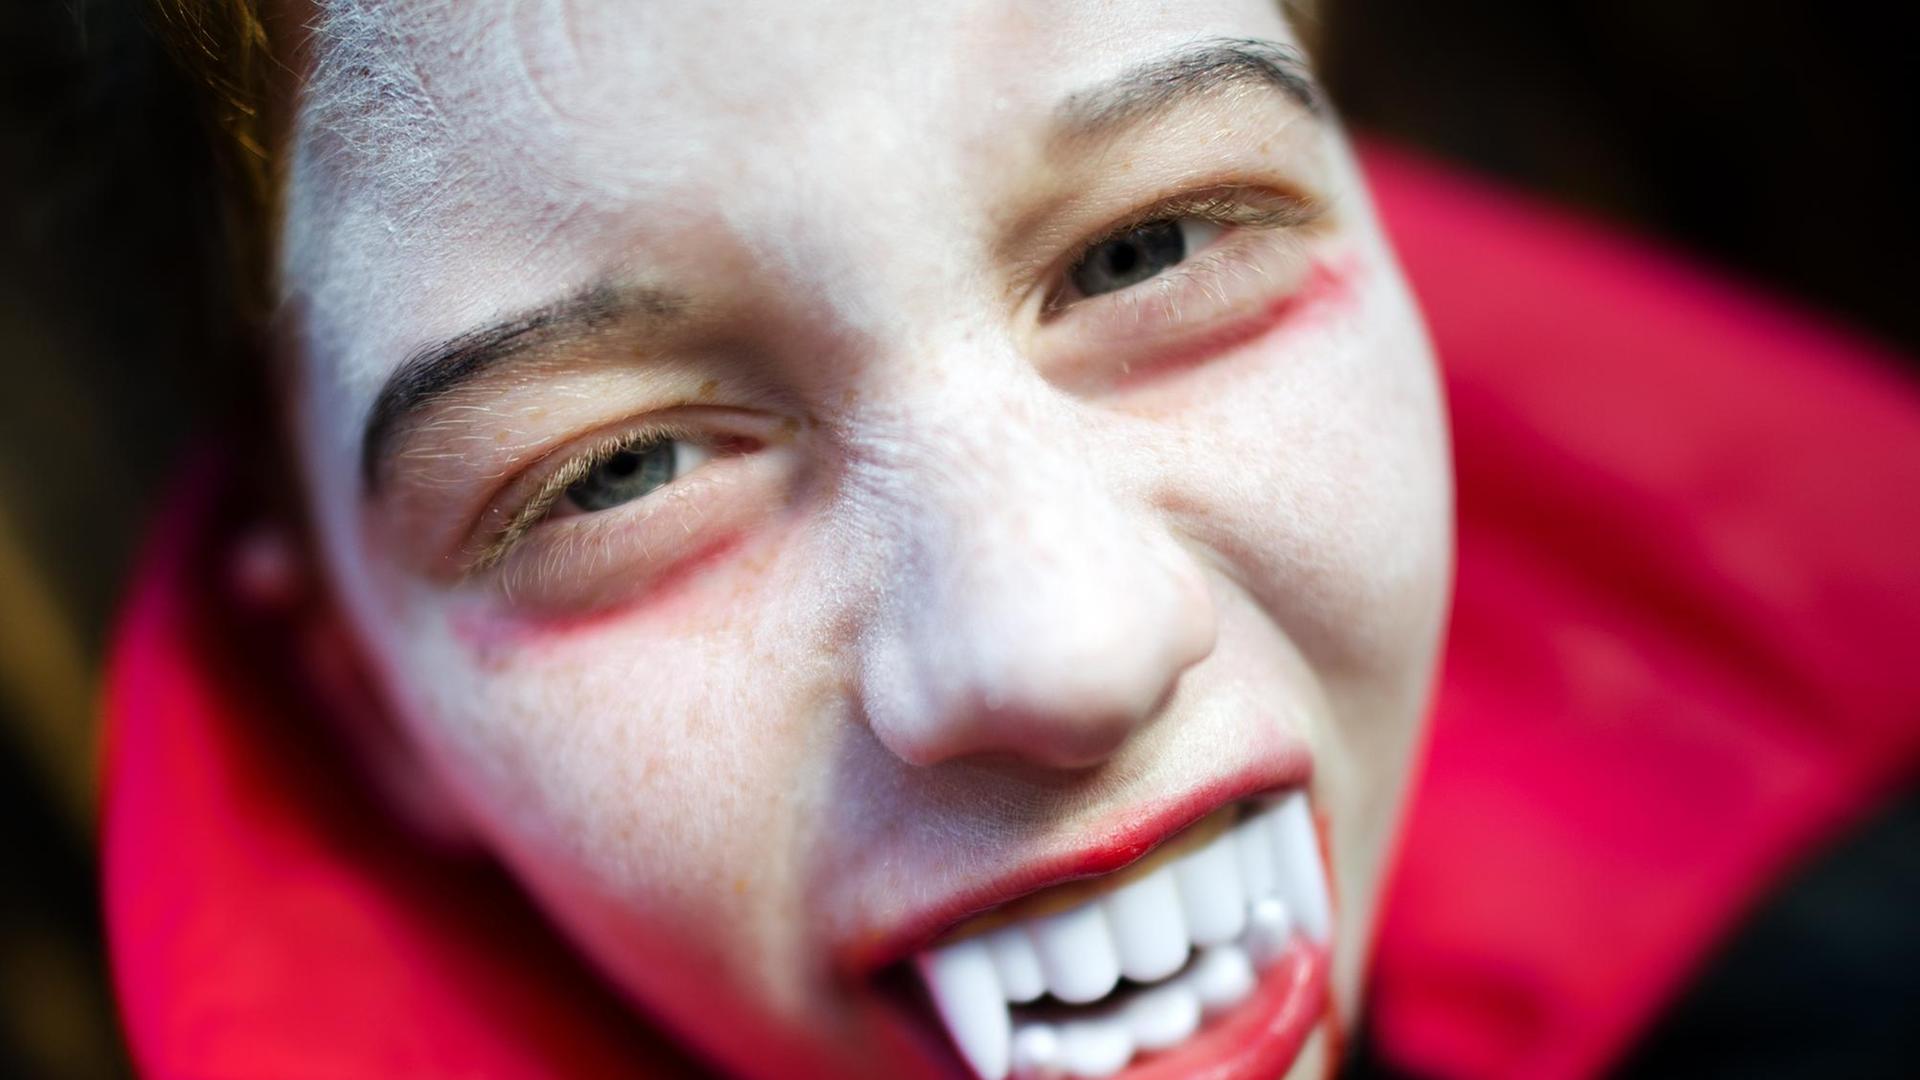 Rowin aus Dresden (Sachsen) zeigt am 31.10.2012 als Vampir verkleidet seine Zähne, bevor er zu einer Halloween Party aufbricht. Halloween wird am Abend und in der Nacht vor Allerheiligen vom 31. Oktober auf den 1. November gefeiert. Foto: Arno Burgi/dpa |